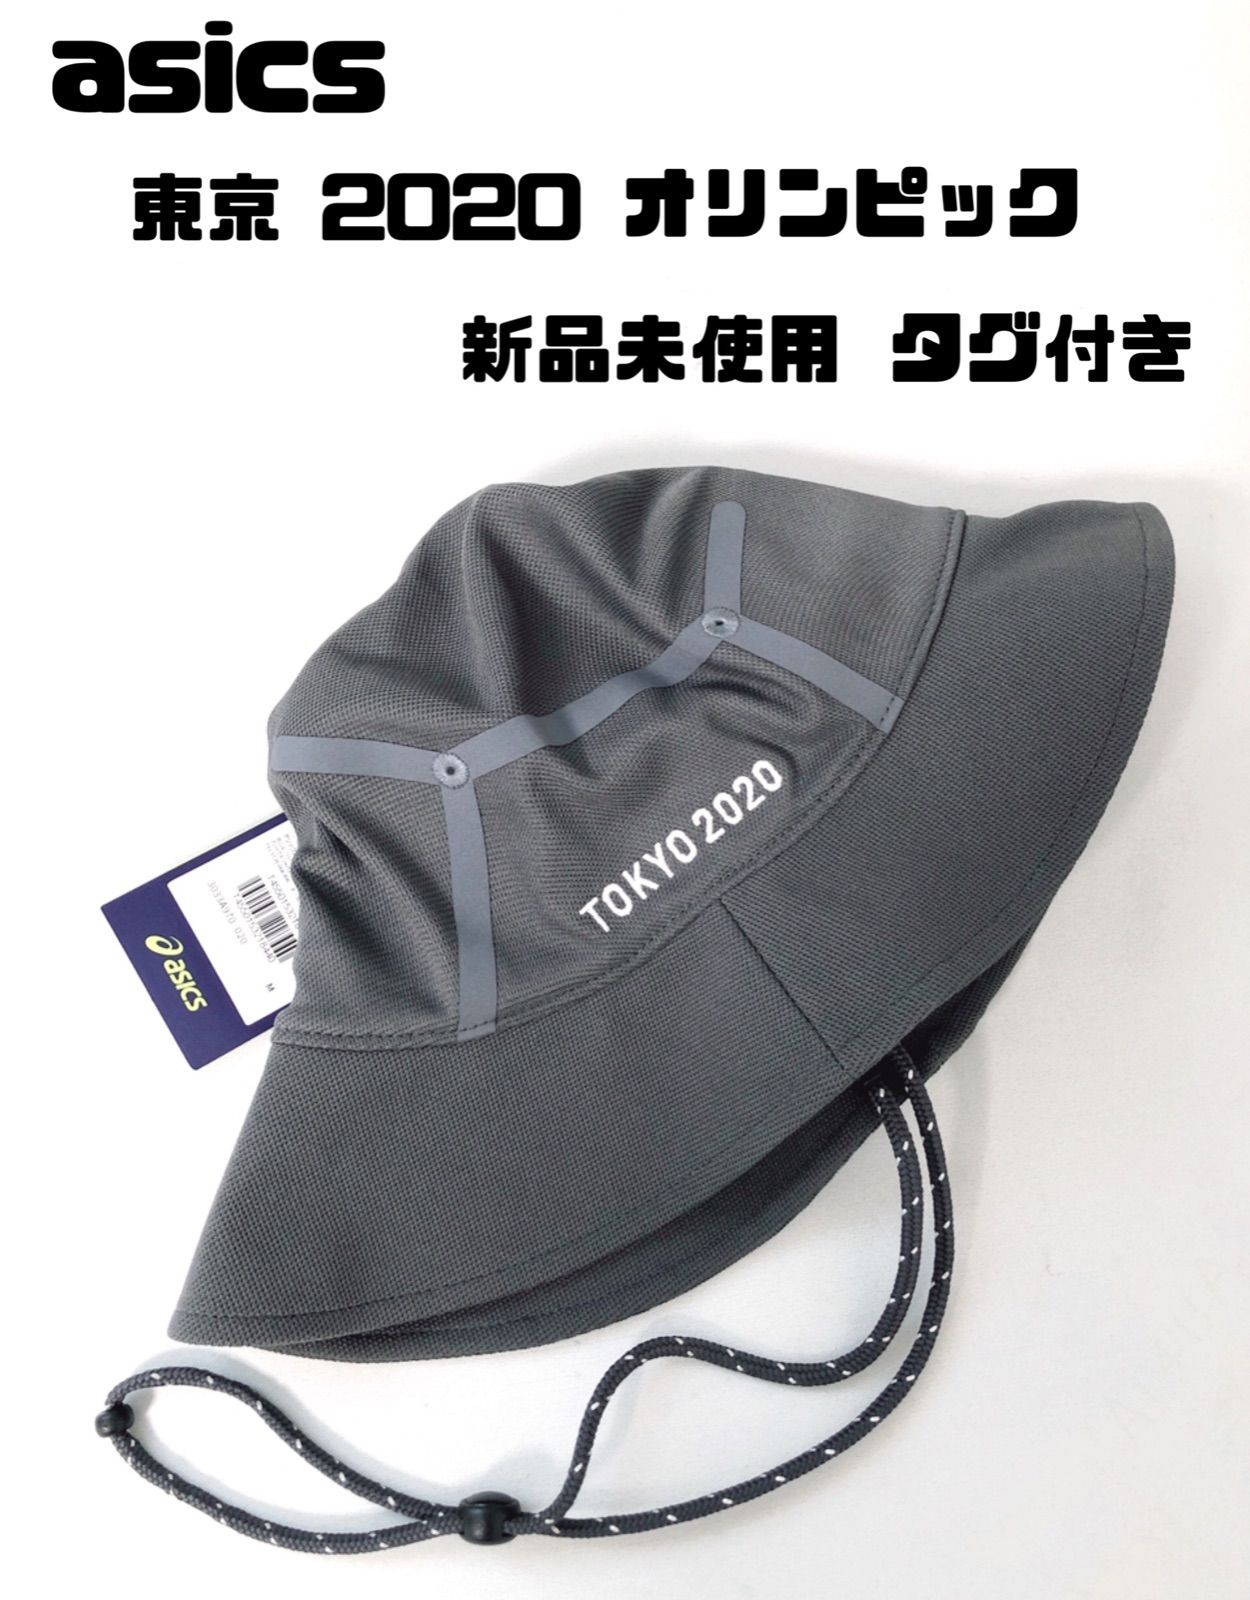 東京オリンピック 記念ハット アシックス新品未使用 - 帽子